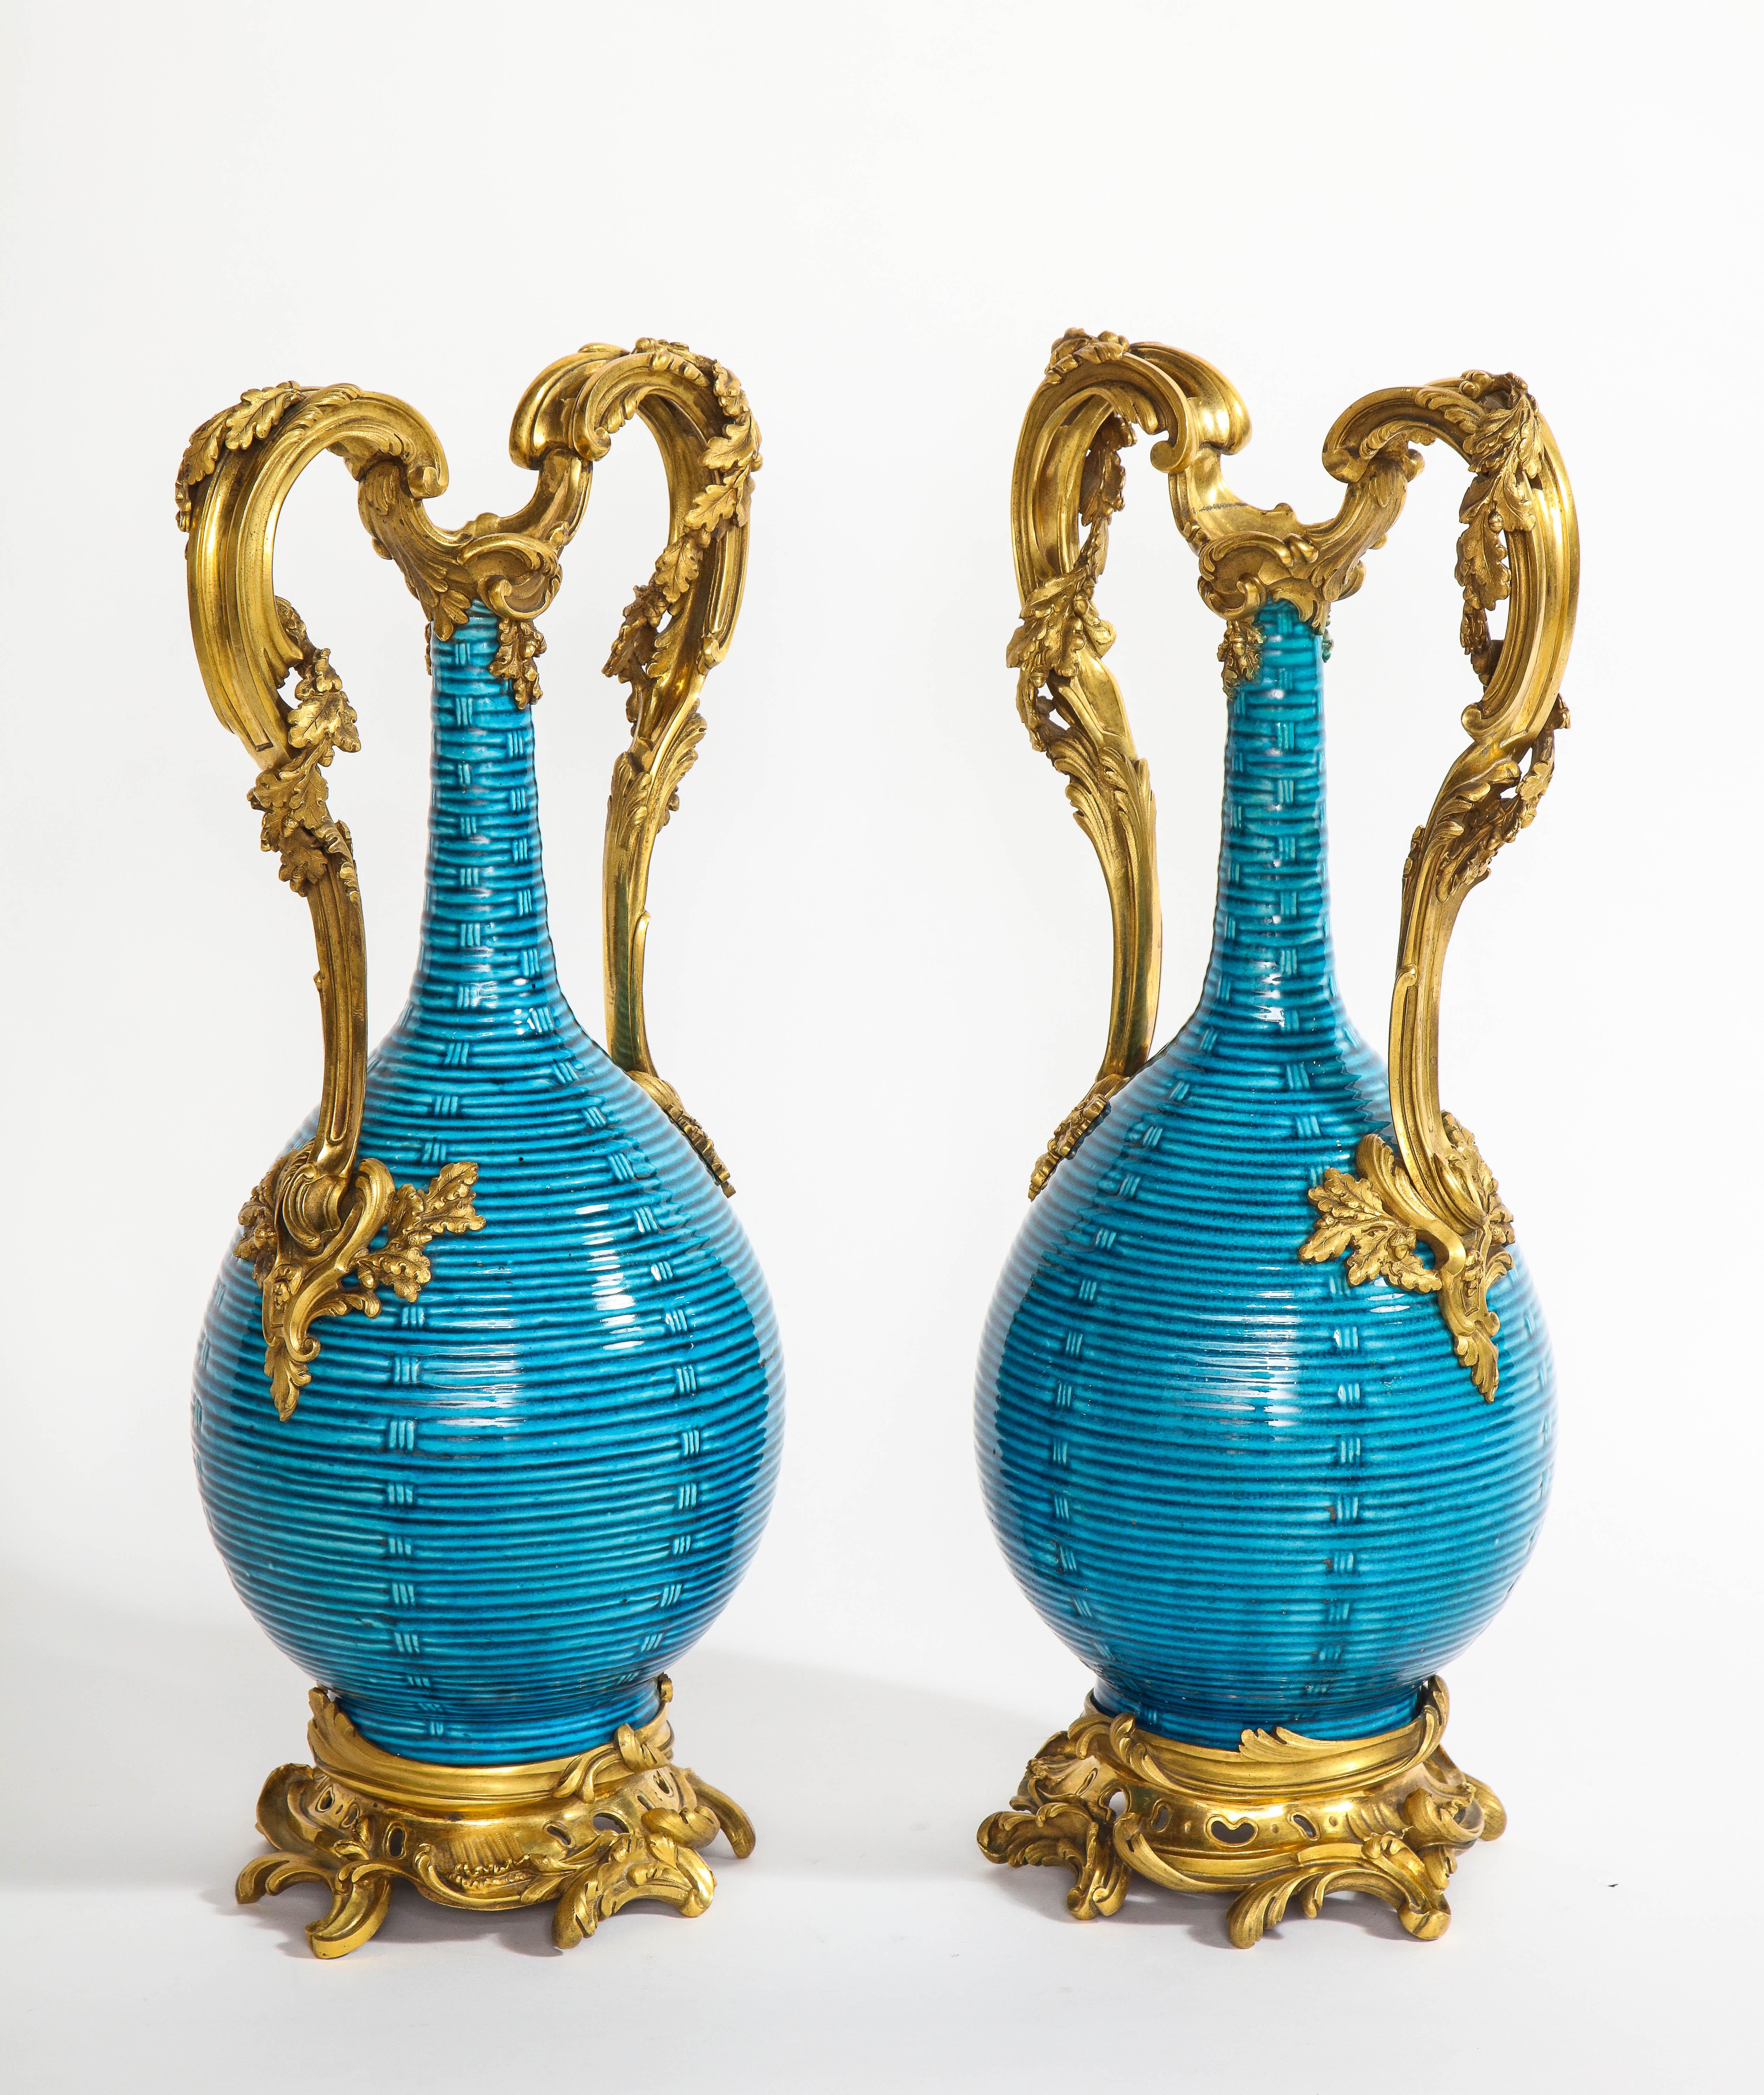 Ein prächtiges und außergewöhnliches Paar von massiven antiken Französisch 18. Jahrhundert Louis XV Periode doré Bronze und chinesischen Türkis Boden Porzellan Hand graviert Korbgeflecht Form Vasen. Das chinesische Porzellan aus der ersten Hälfte